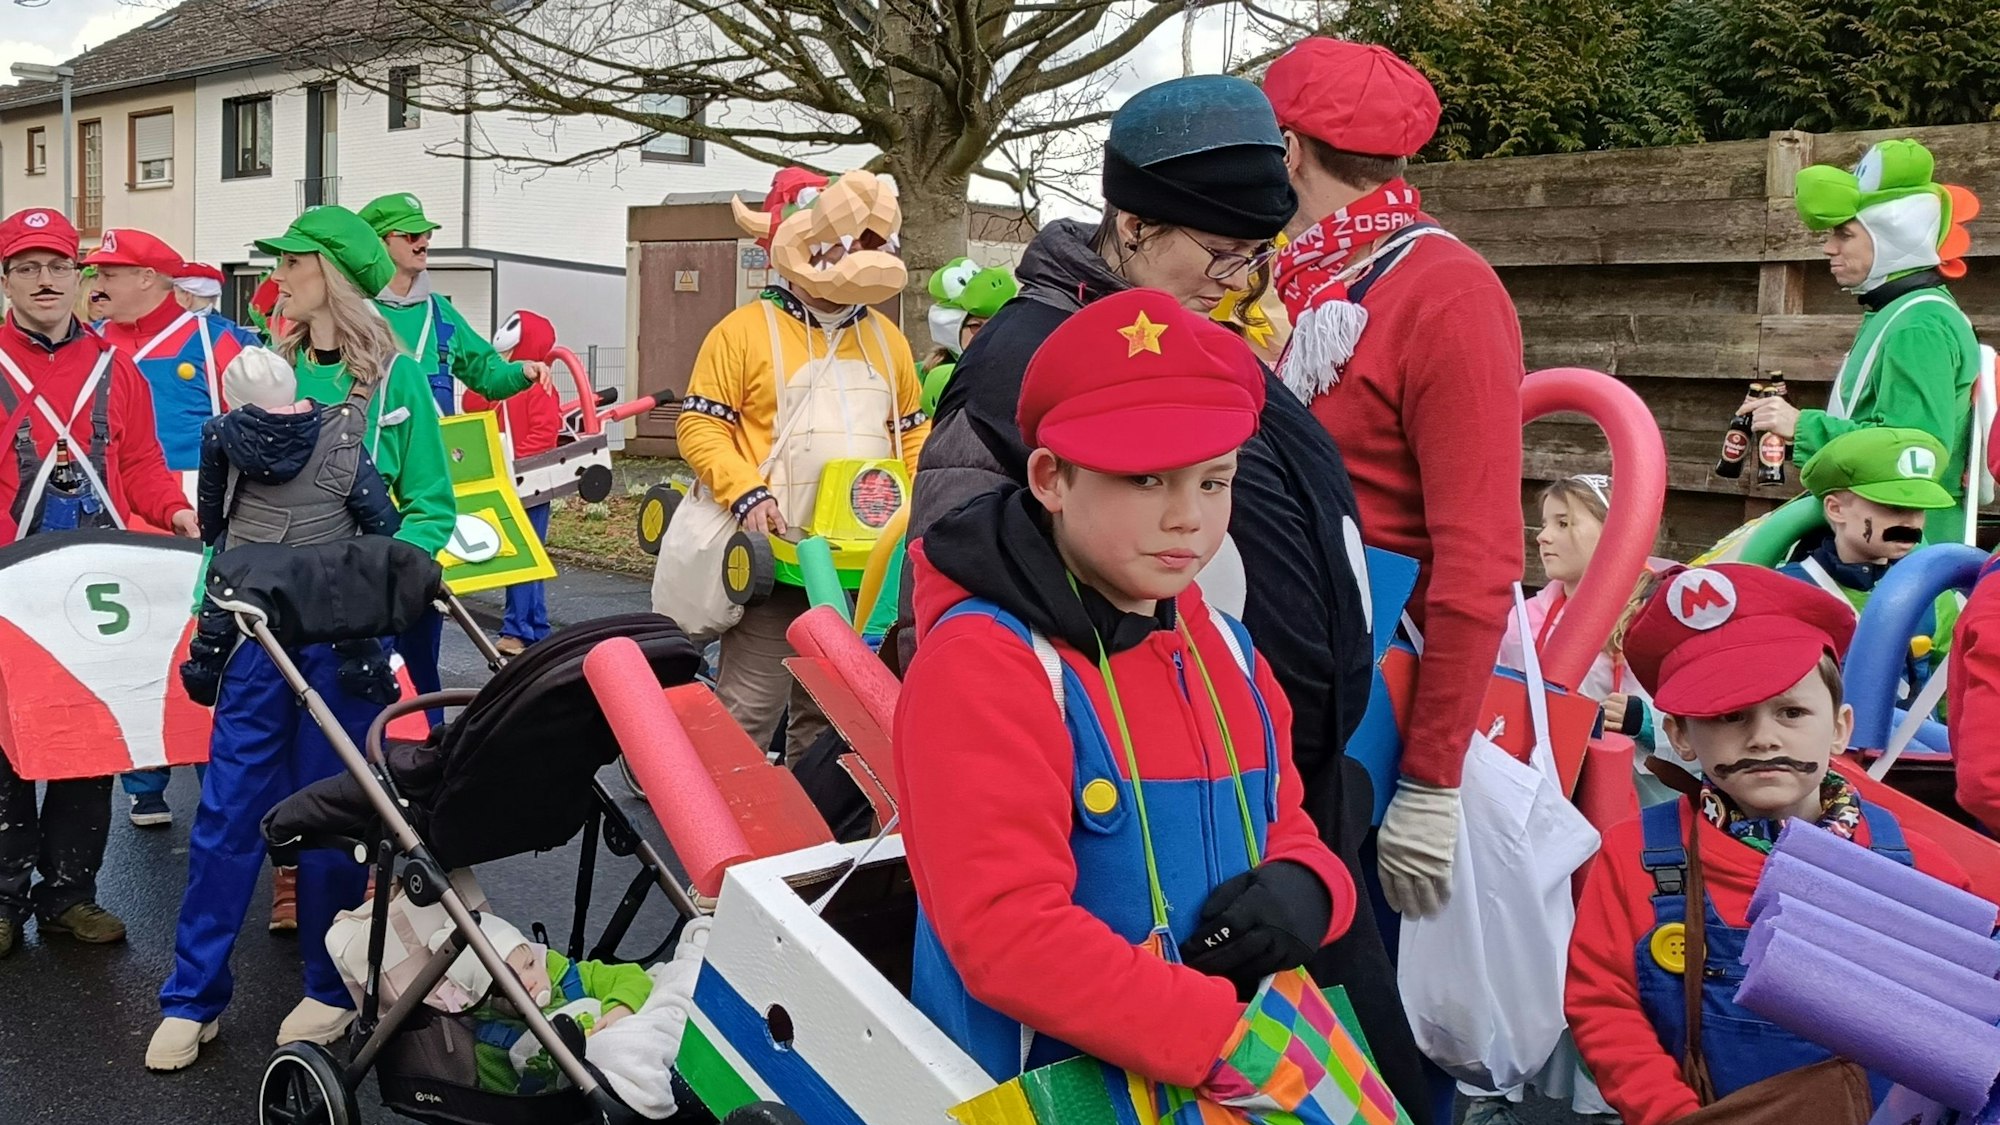 Teilnehmer eines Karnevalszugs in bunten Super-Mario-Kostümen.